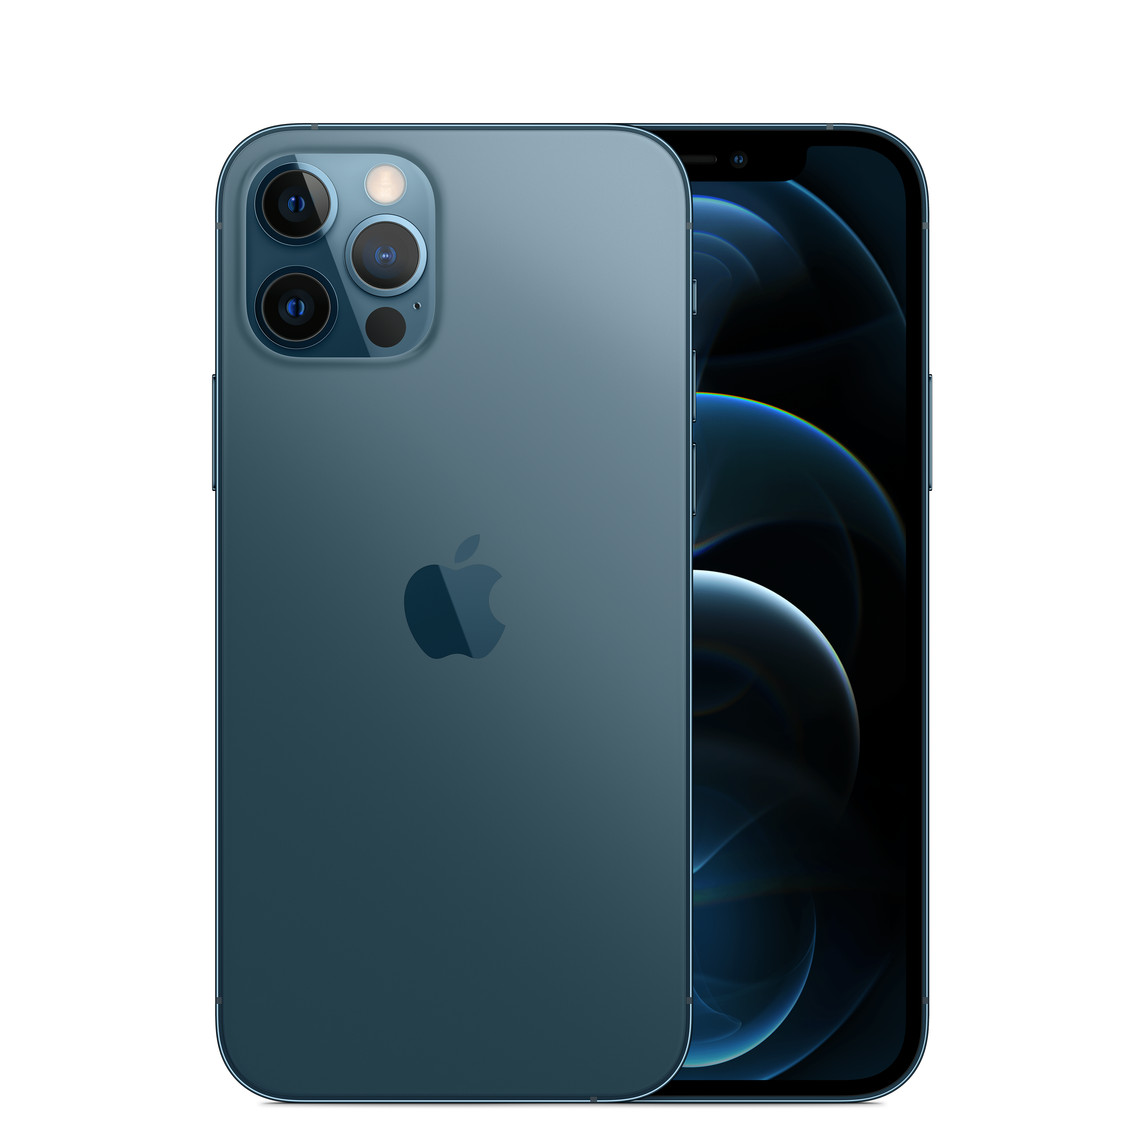 iPhone 12 Pro in Blau, Pro Kamera-System mit True Tone Blitz, LiDAR, Mikrofon, Apple Logo in der Mitte, Vorderseite, All-Screen Display